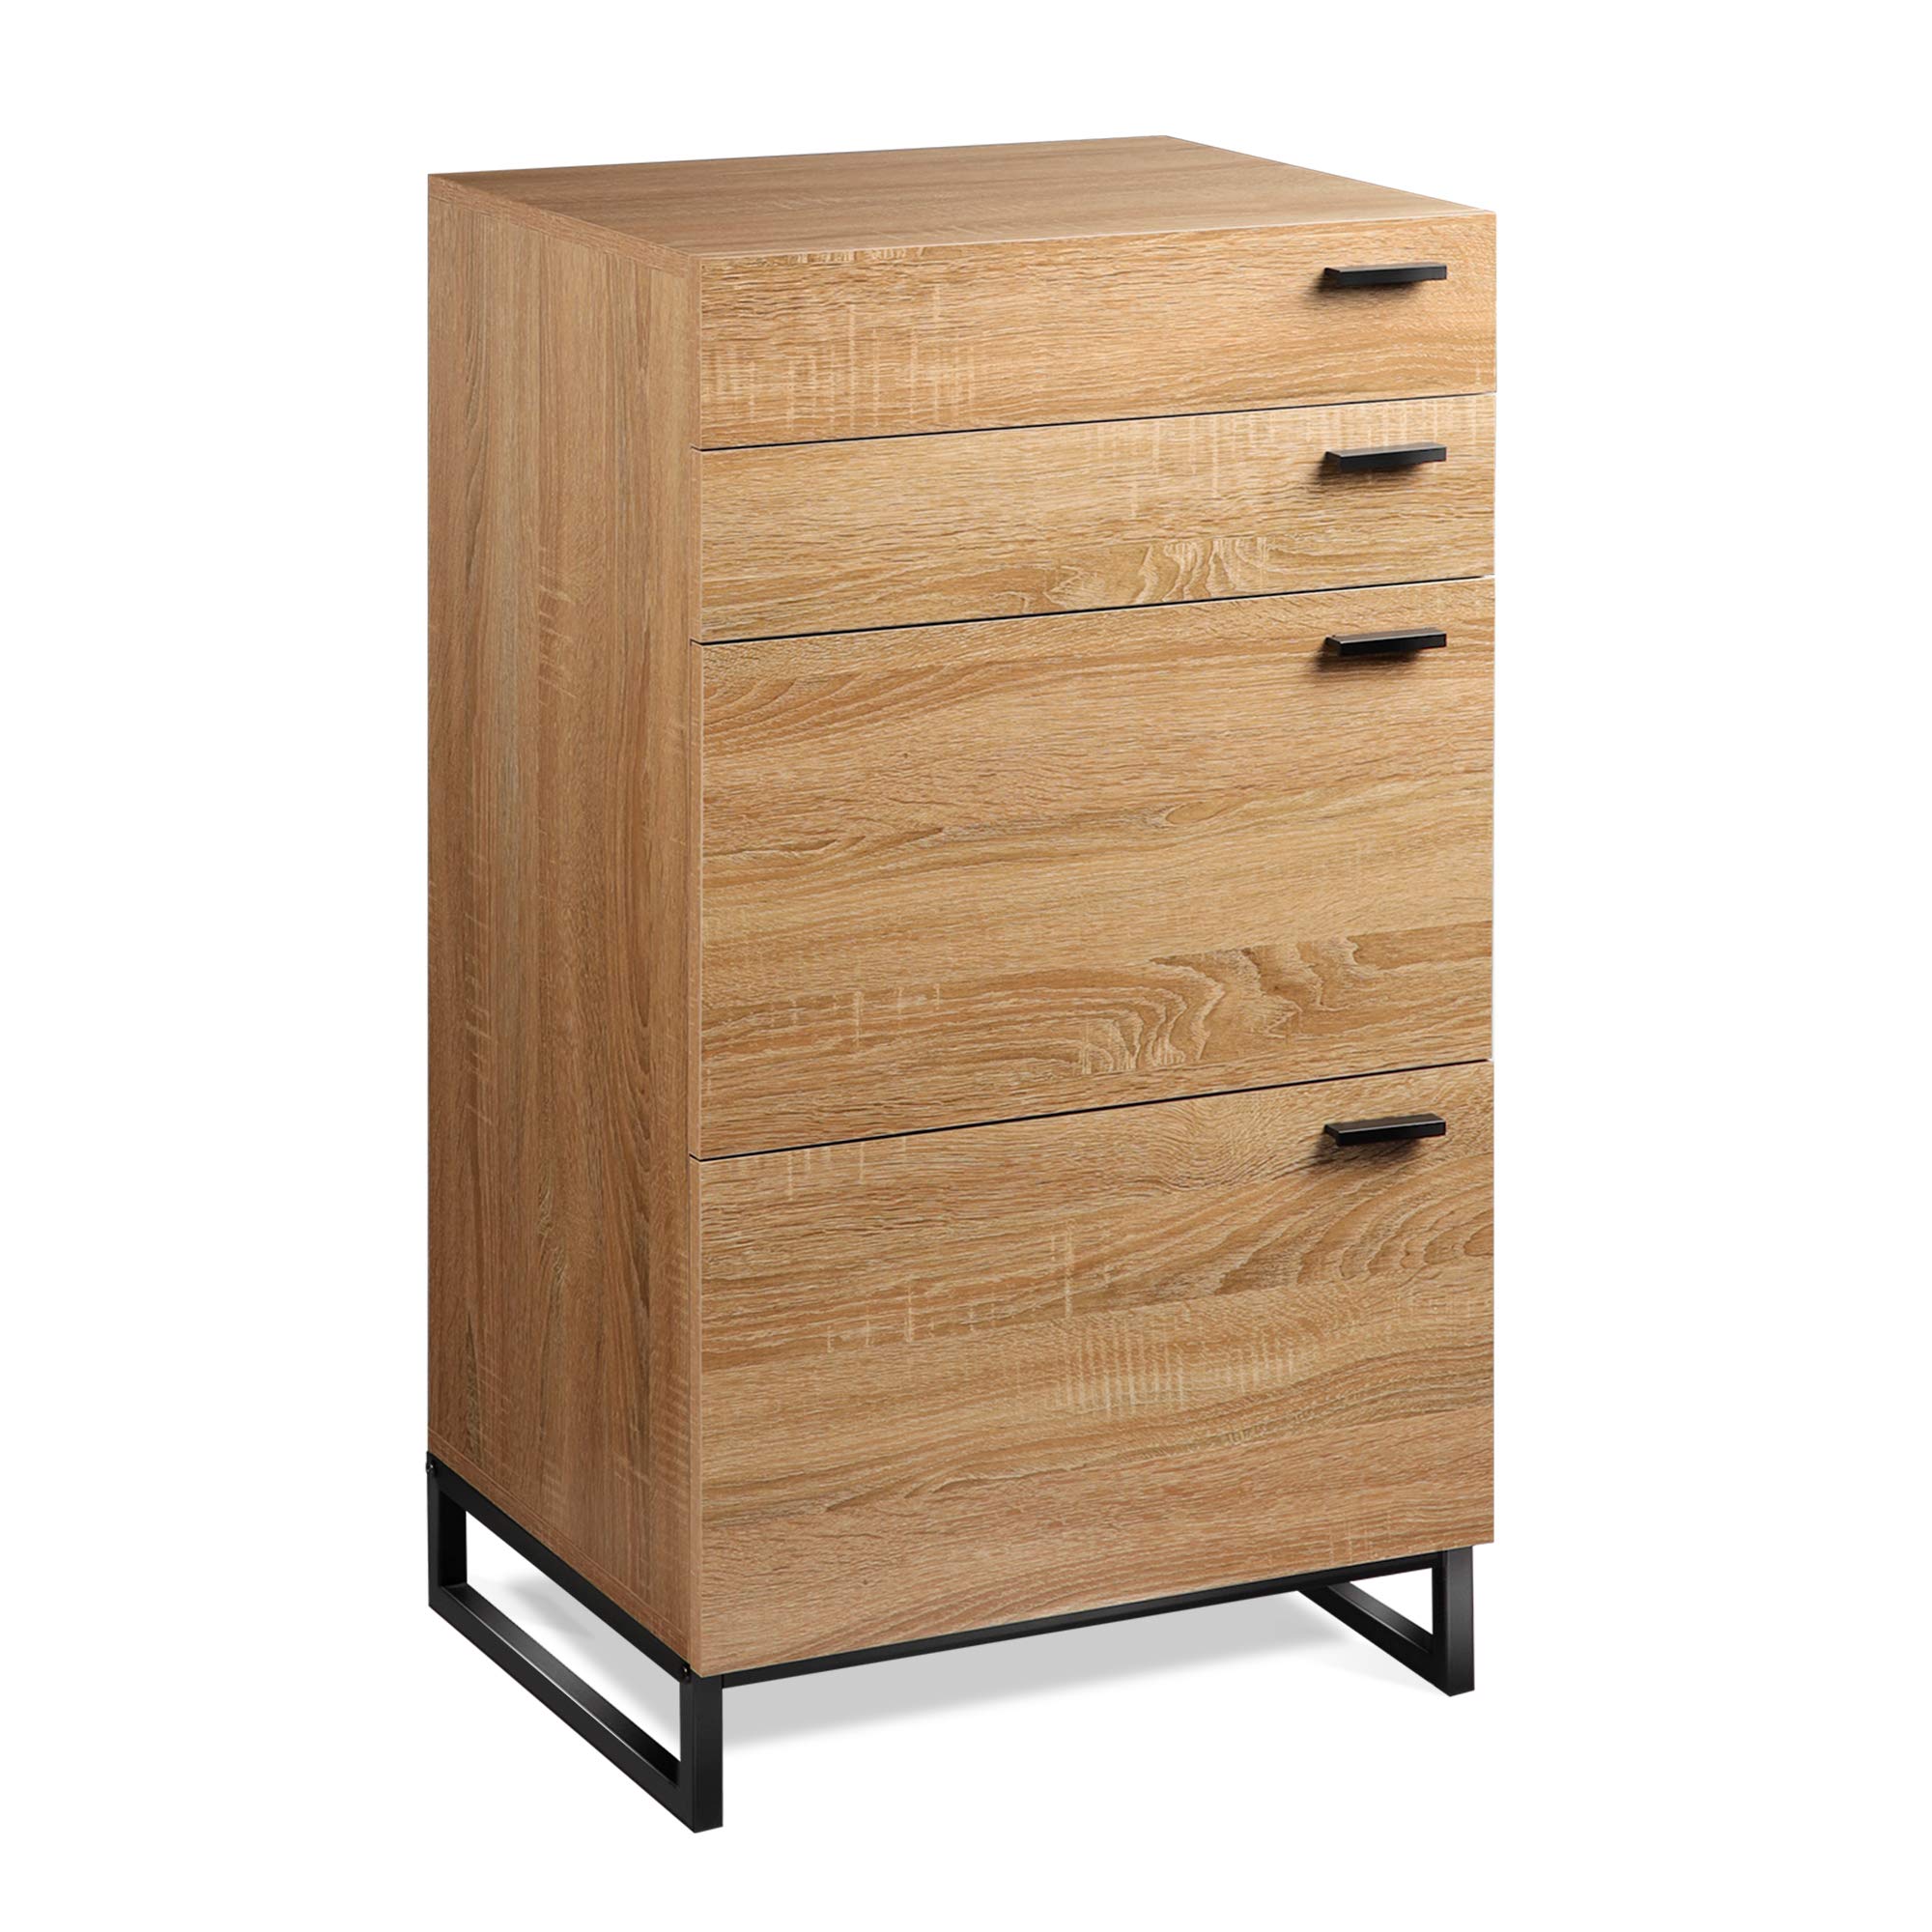 WLIVE 4 Drawer High Dresser, Drawer Chest, Storage Cabinet